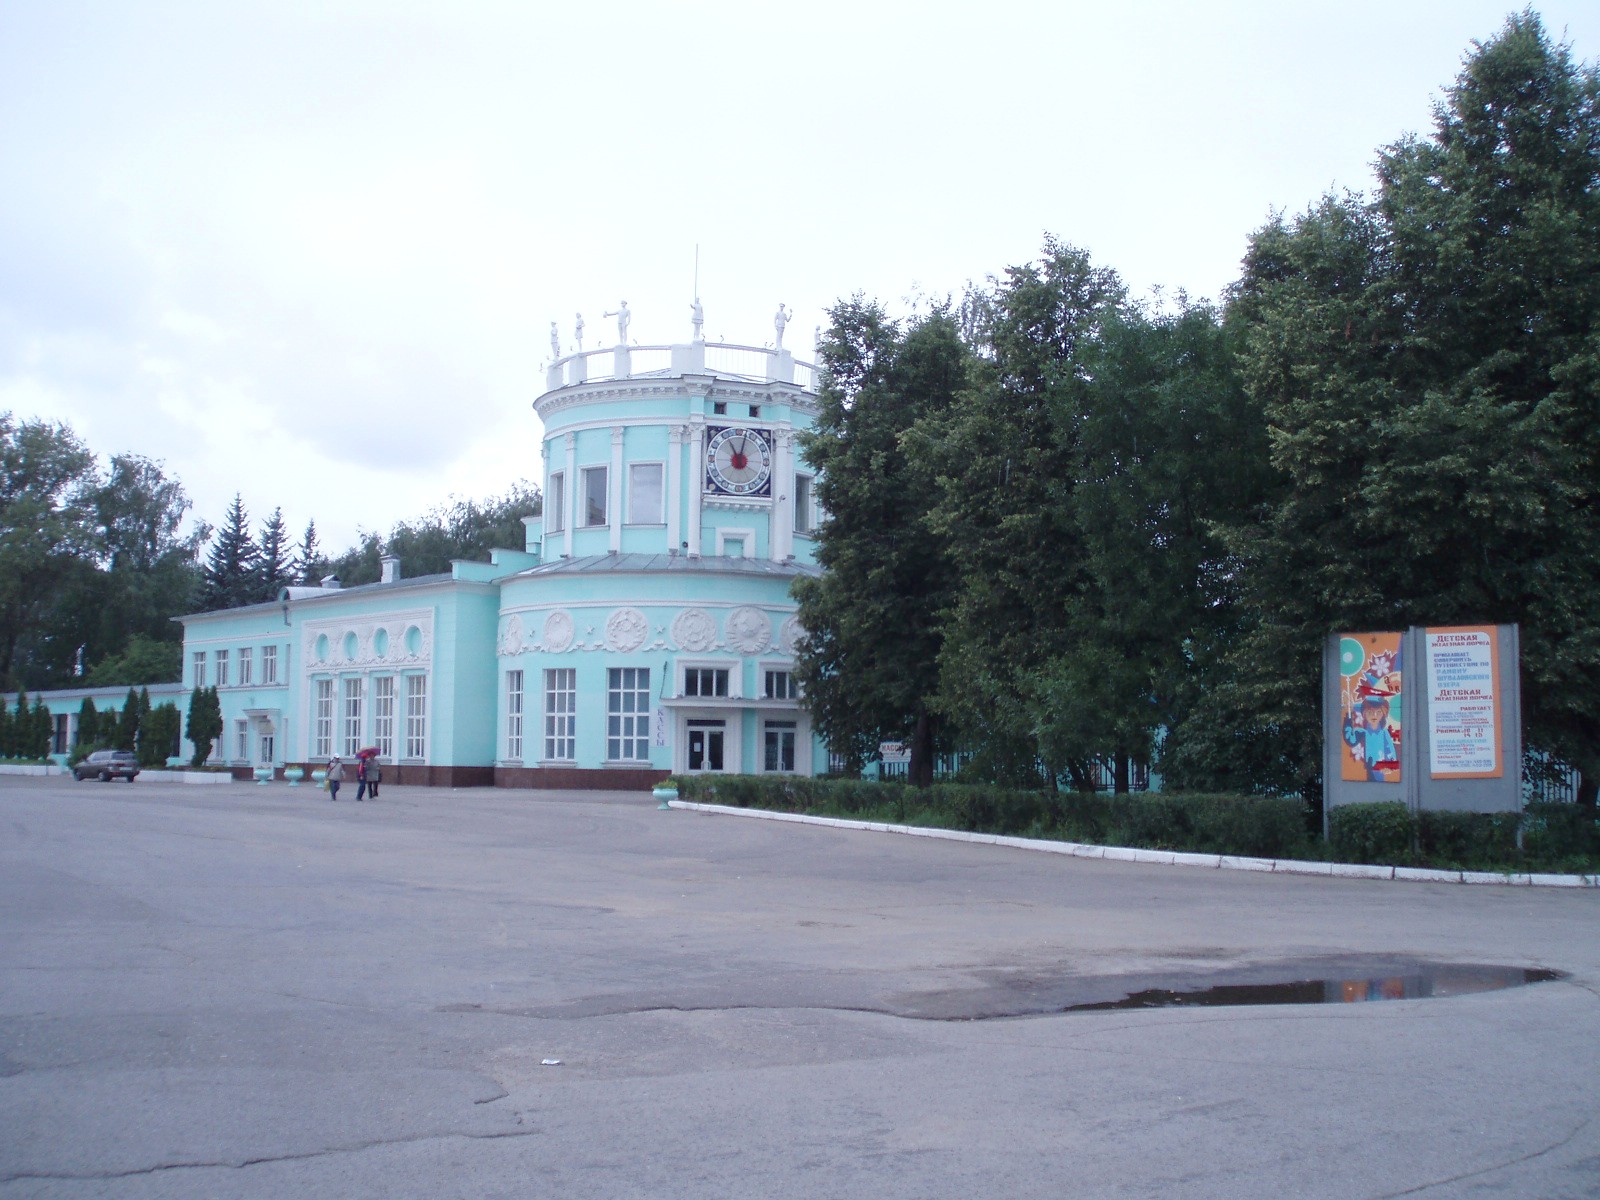 Малая Горьковская (Нижегородская) детская железная дорога - фотографии, сделанные в 2006 году (часть 1)